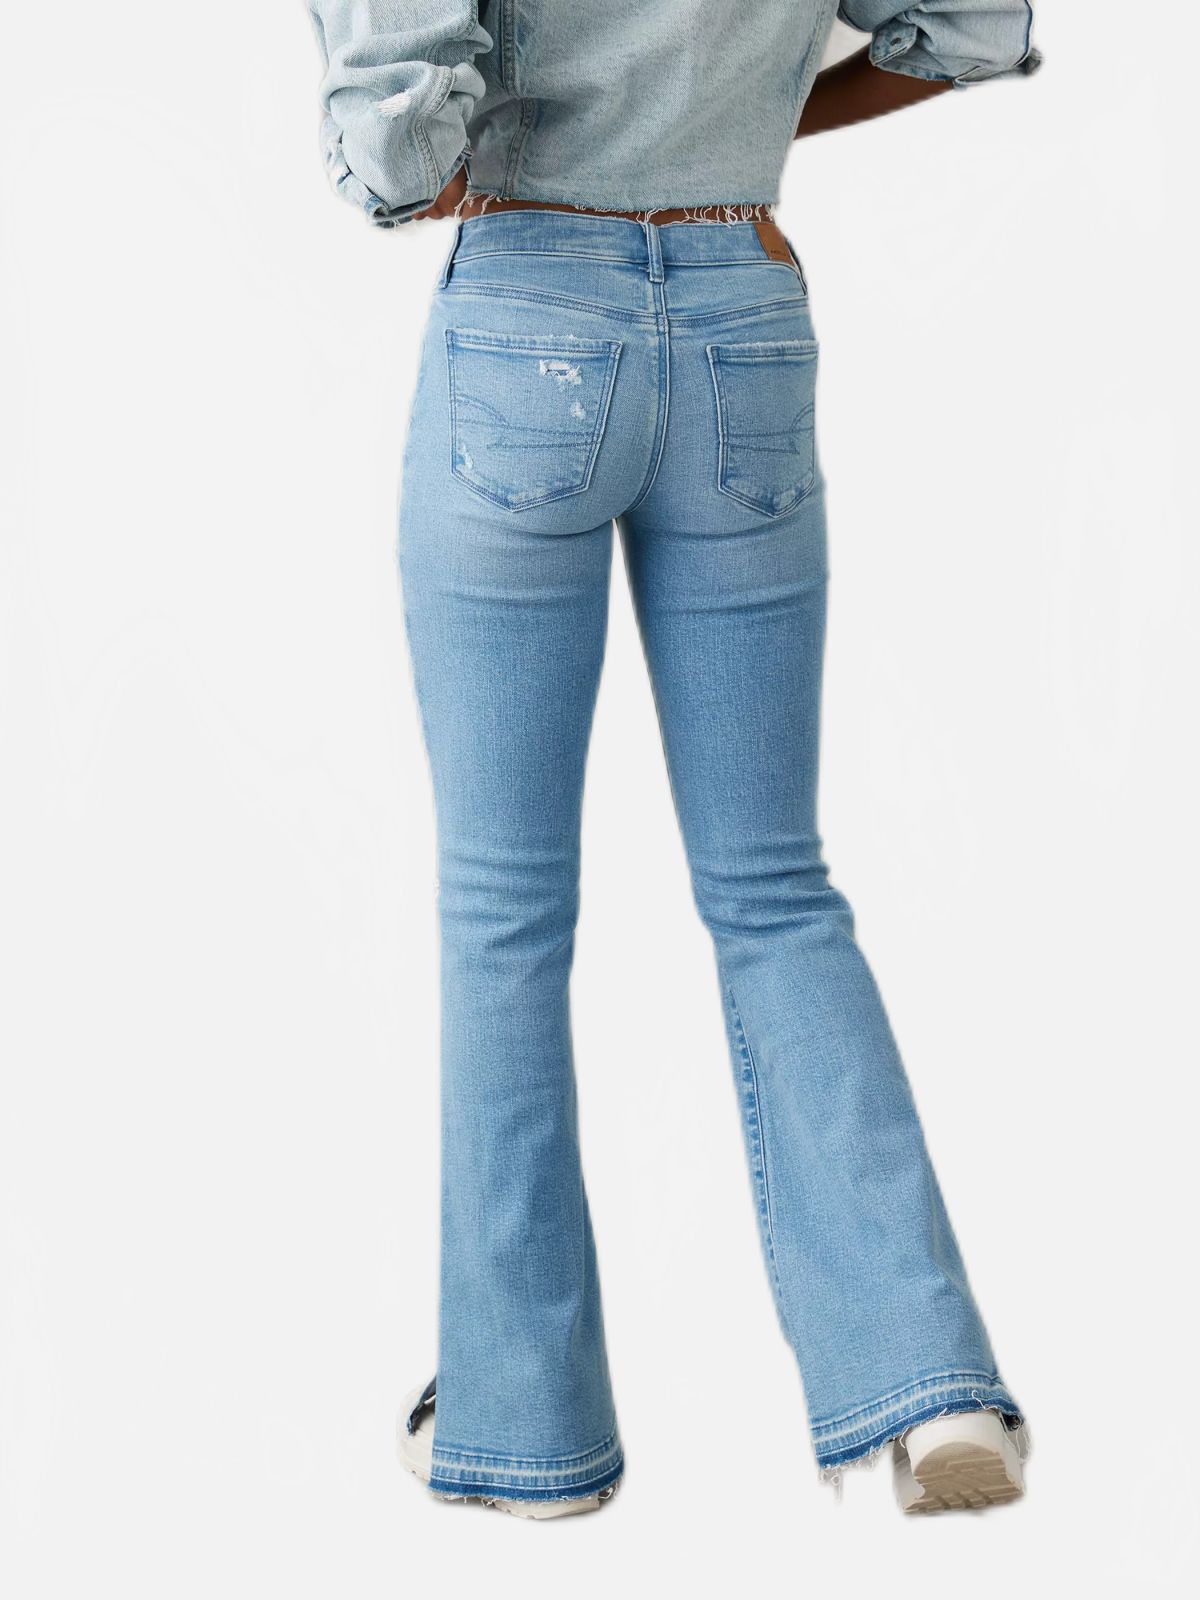  ג'ינס בגזרת FLARE של AMERICAN EAGLE